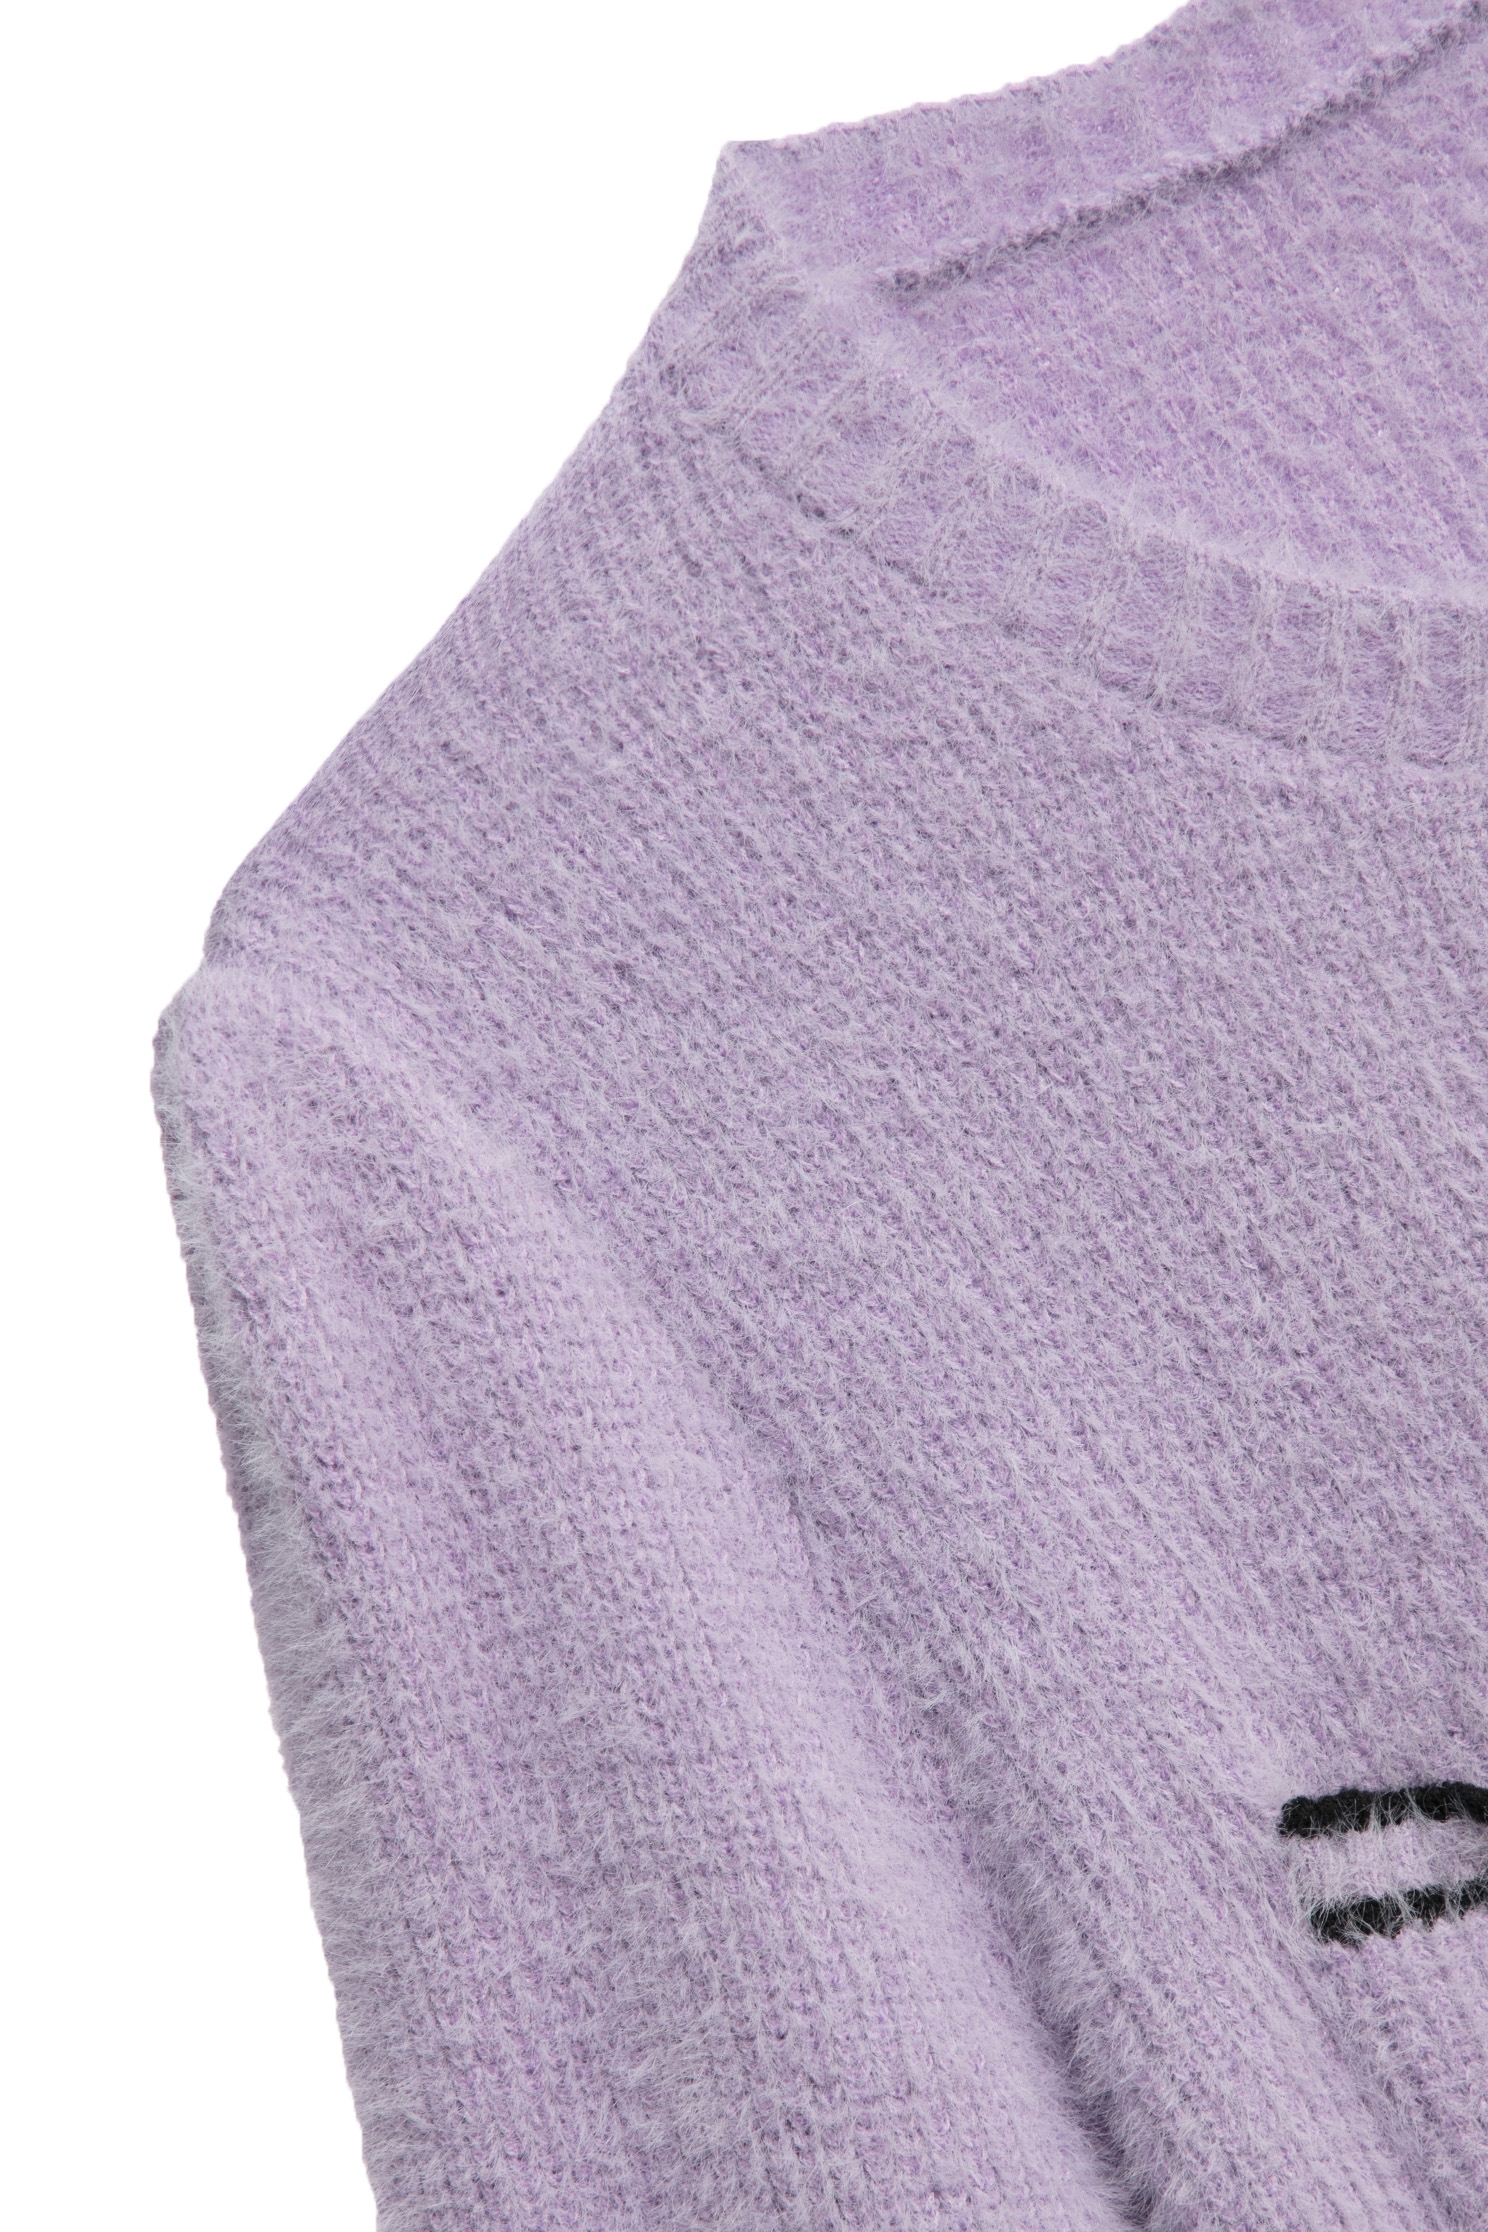 淺蔥紫仿貂毛針織單品淺蔥紫仿貂毛針織單品,新年開運特輯,春夏穿搭,針織,針織衫